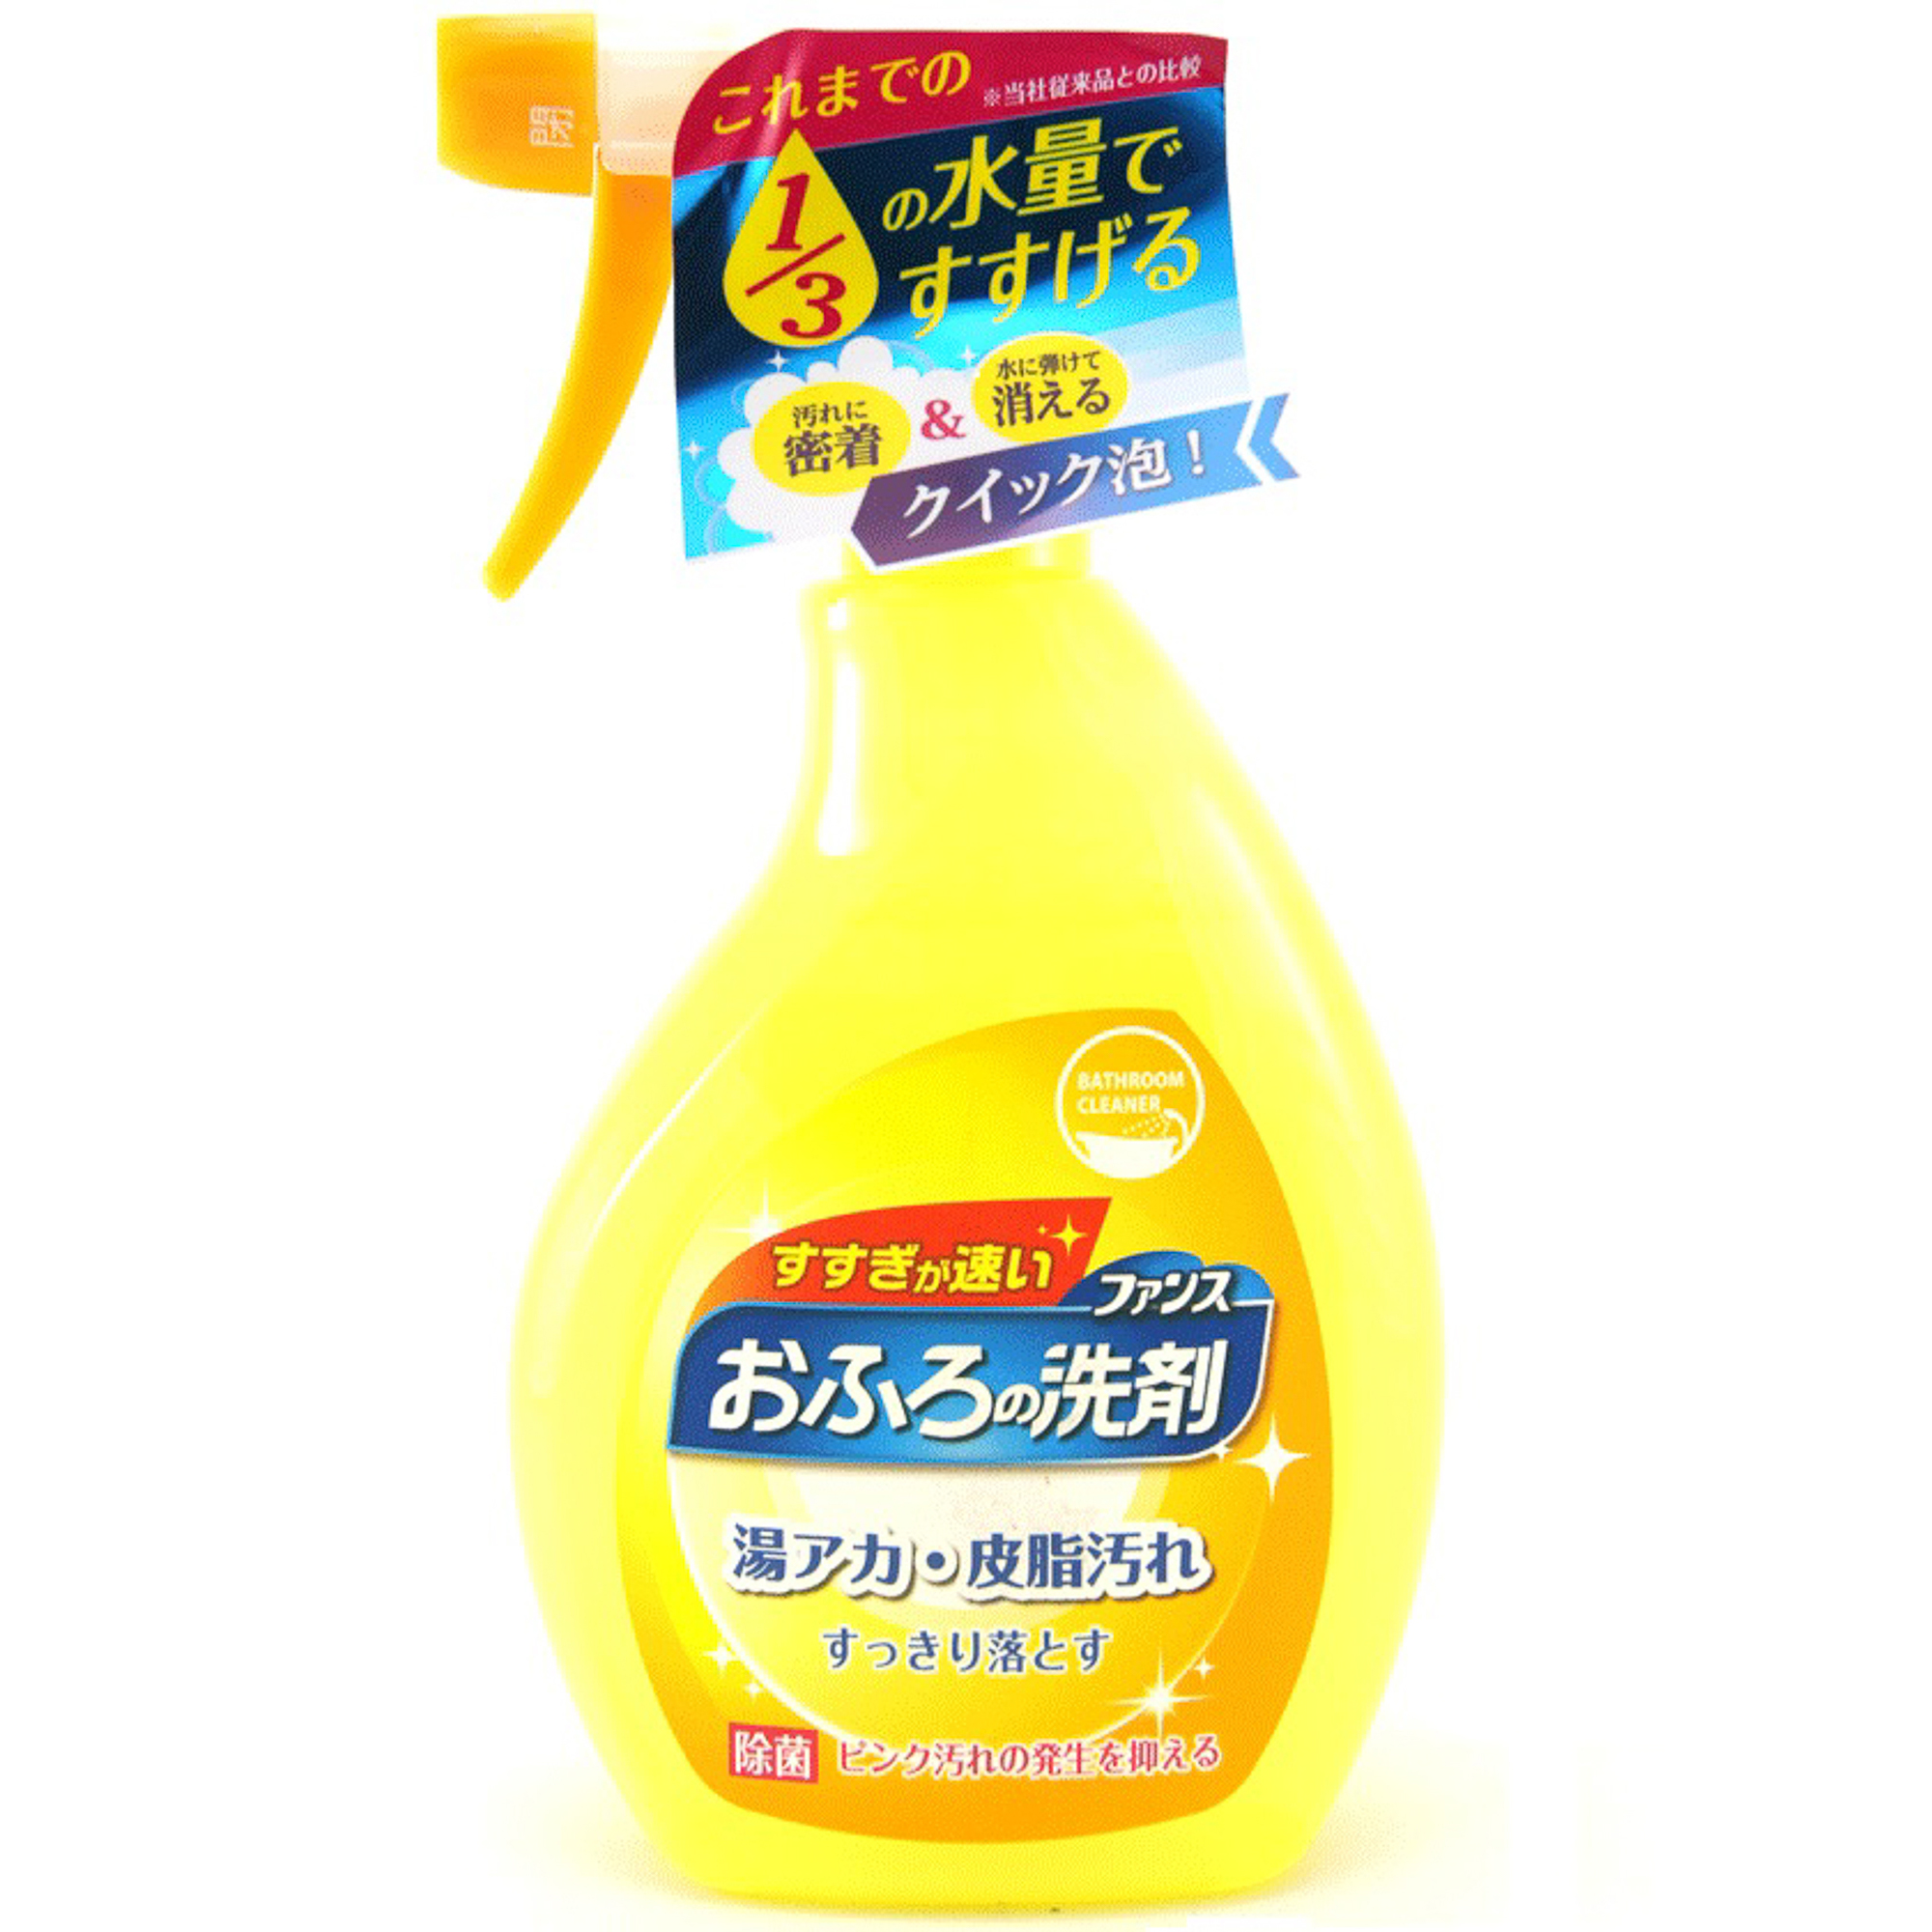 Спрей пенный Daiichi Ofuro для чистки в ванной комнате 380 мл альпийские луга спрей кошачья мята 100 мл 100 мл